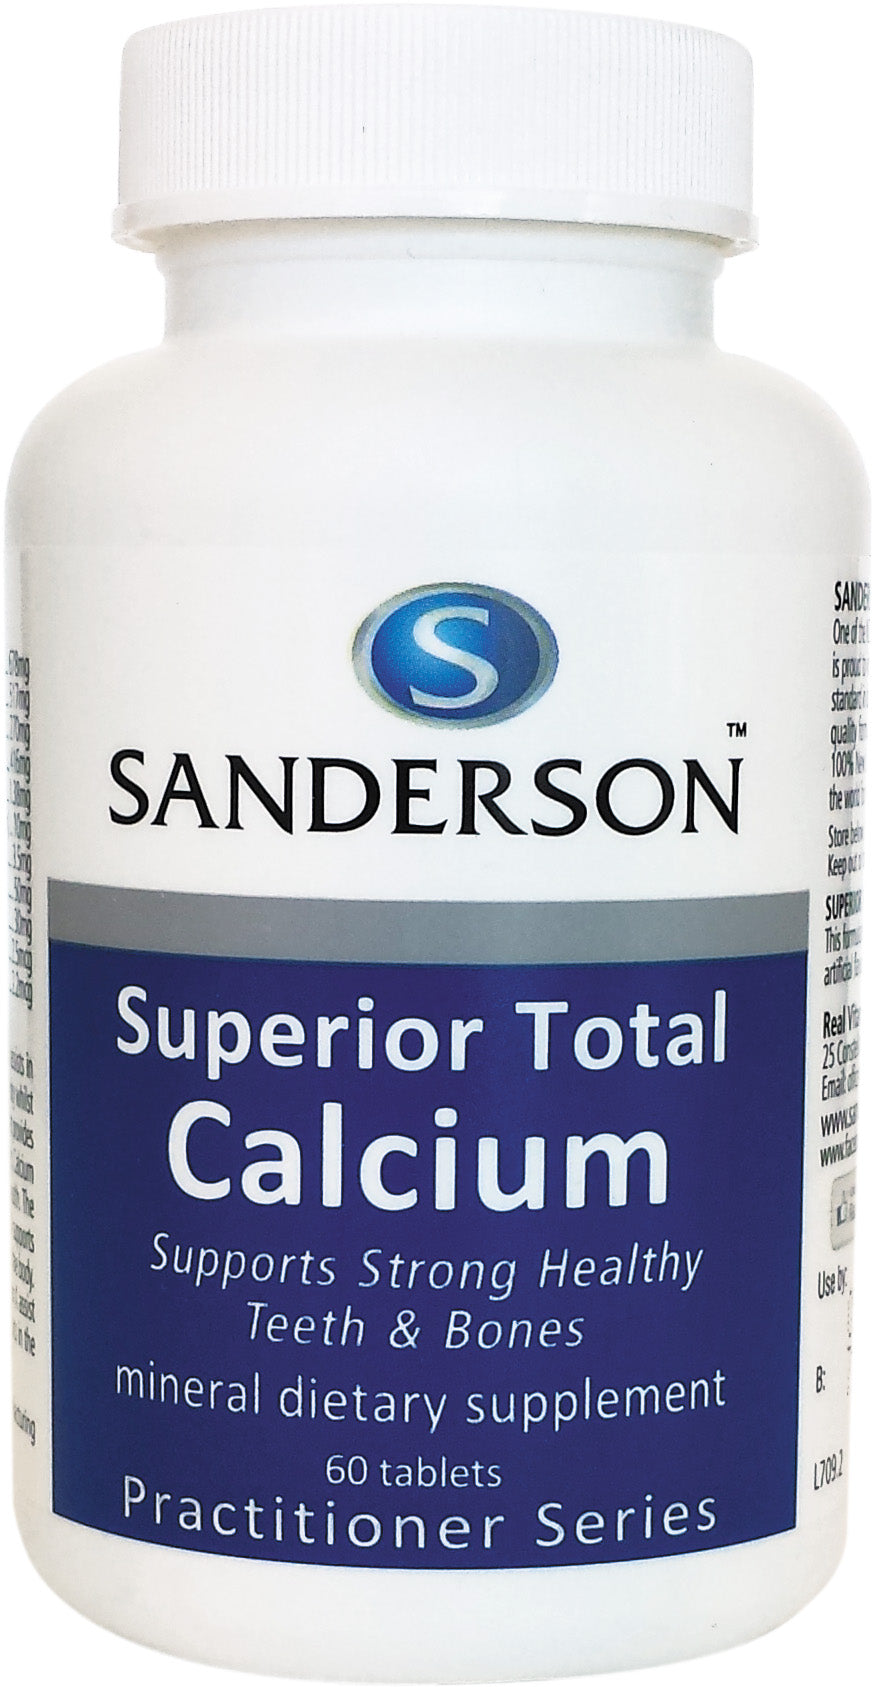 Superior Total Calcium Tablets